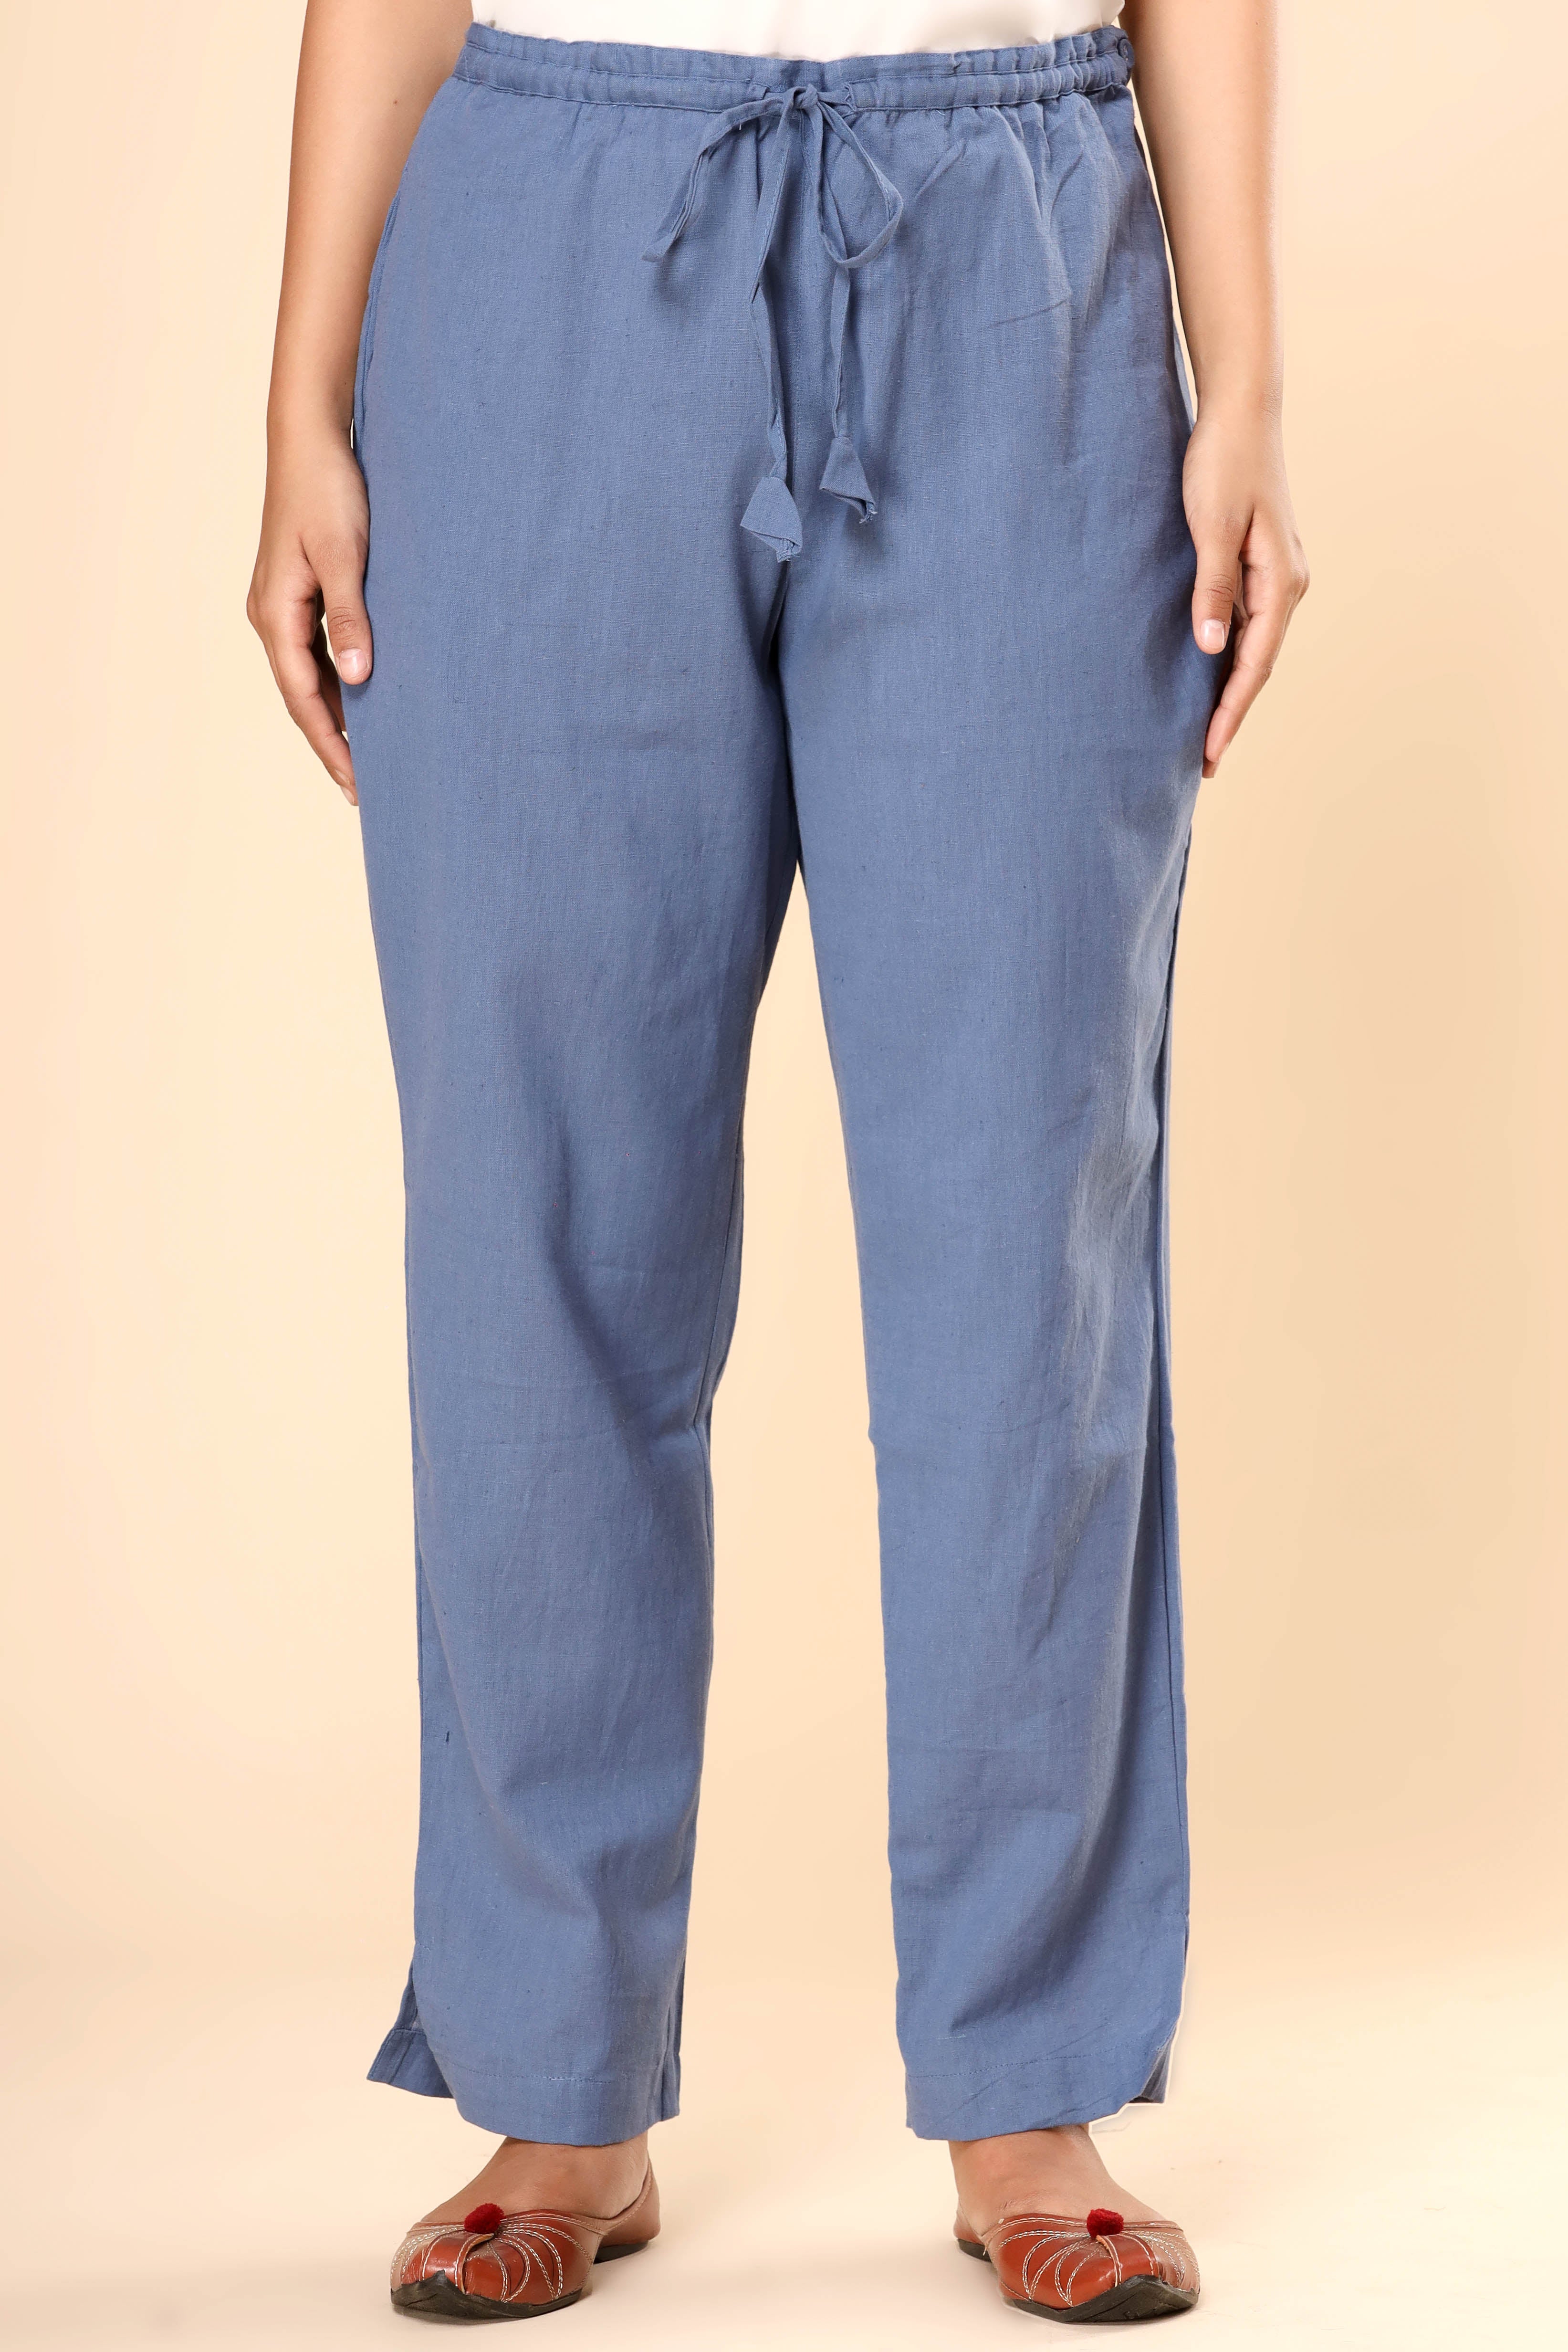 Rustic Blue Cotton Flex Straight Zipper Pants